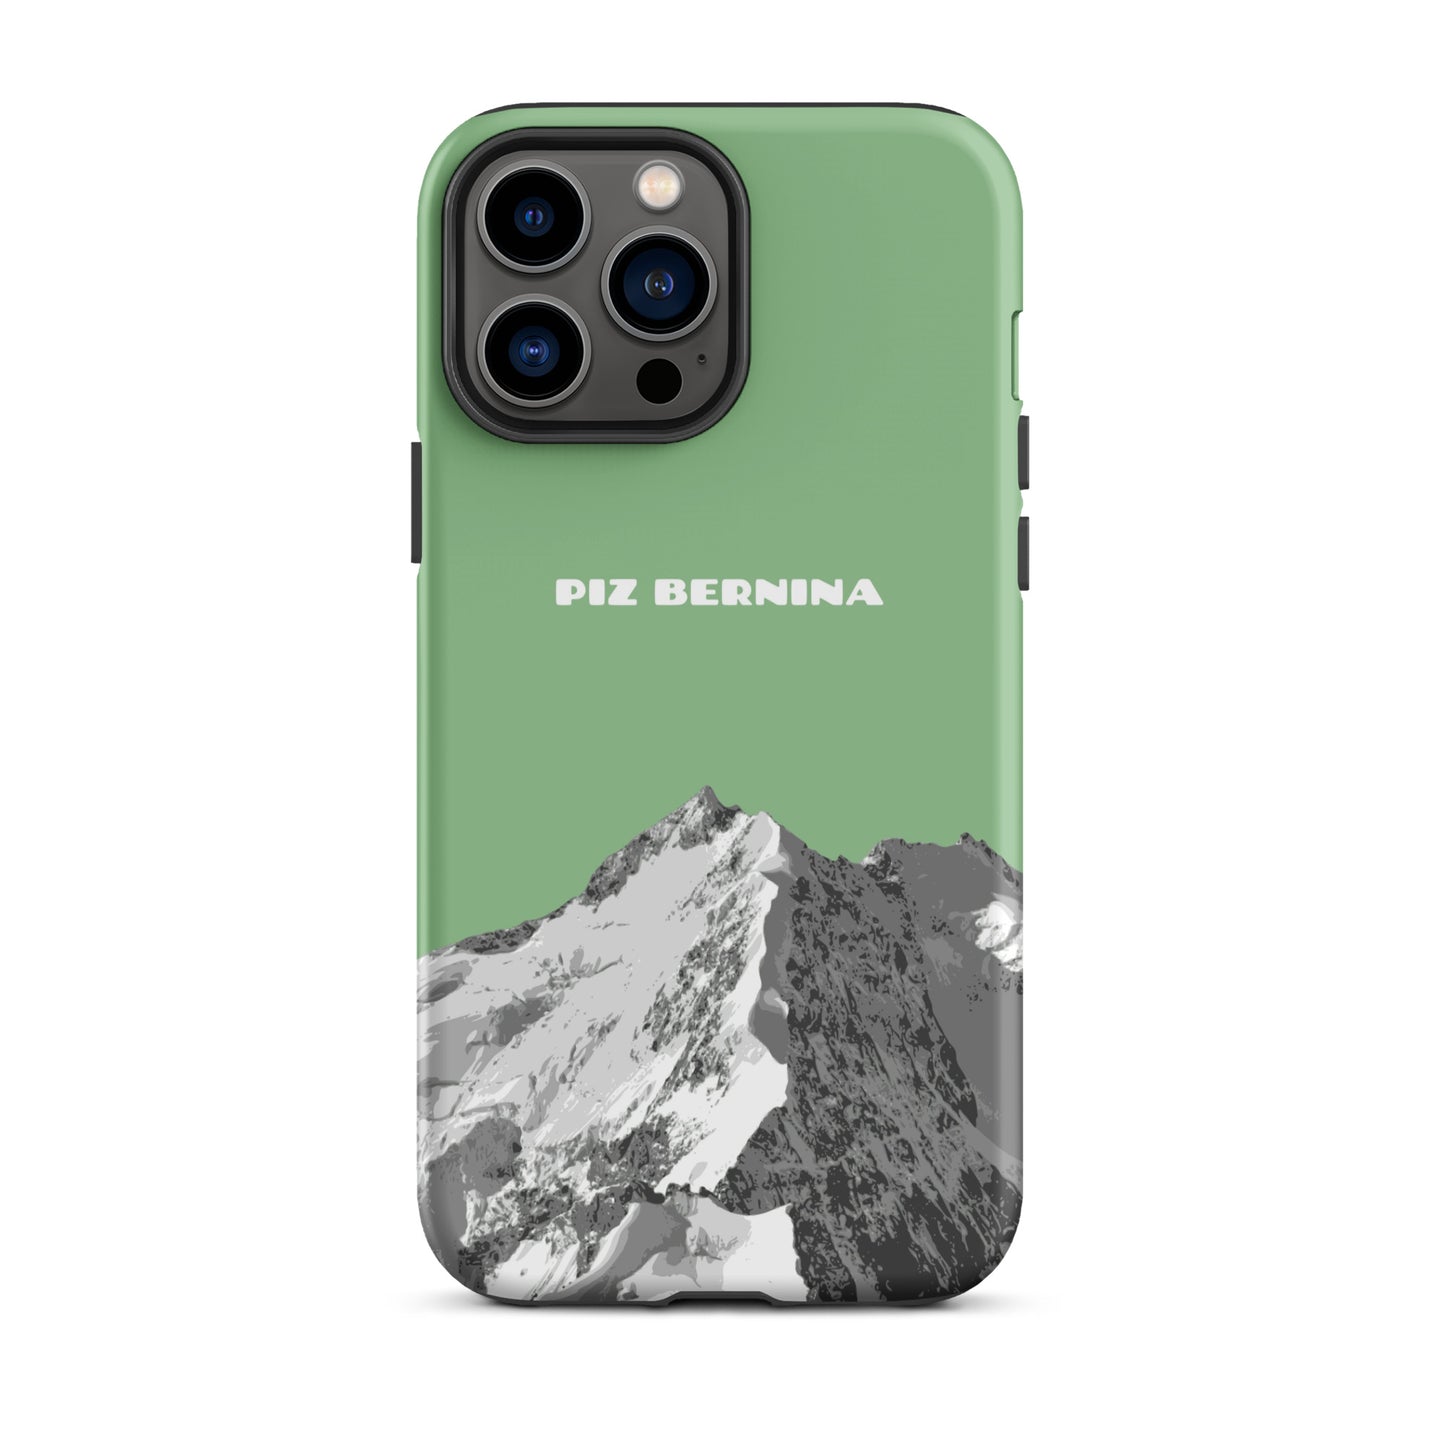 Hülle für das iPhone 13 Pro Max von Apple in der Farbe Hellgrün, dass den Piz Bernina in Graubünden zeigt.